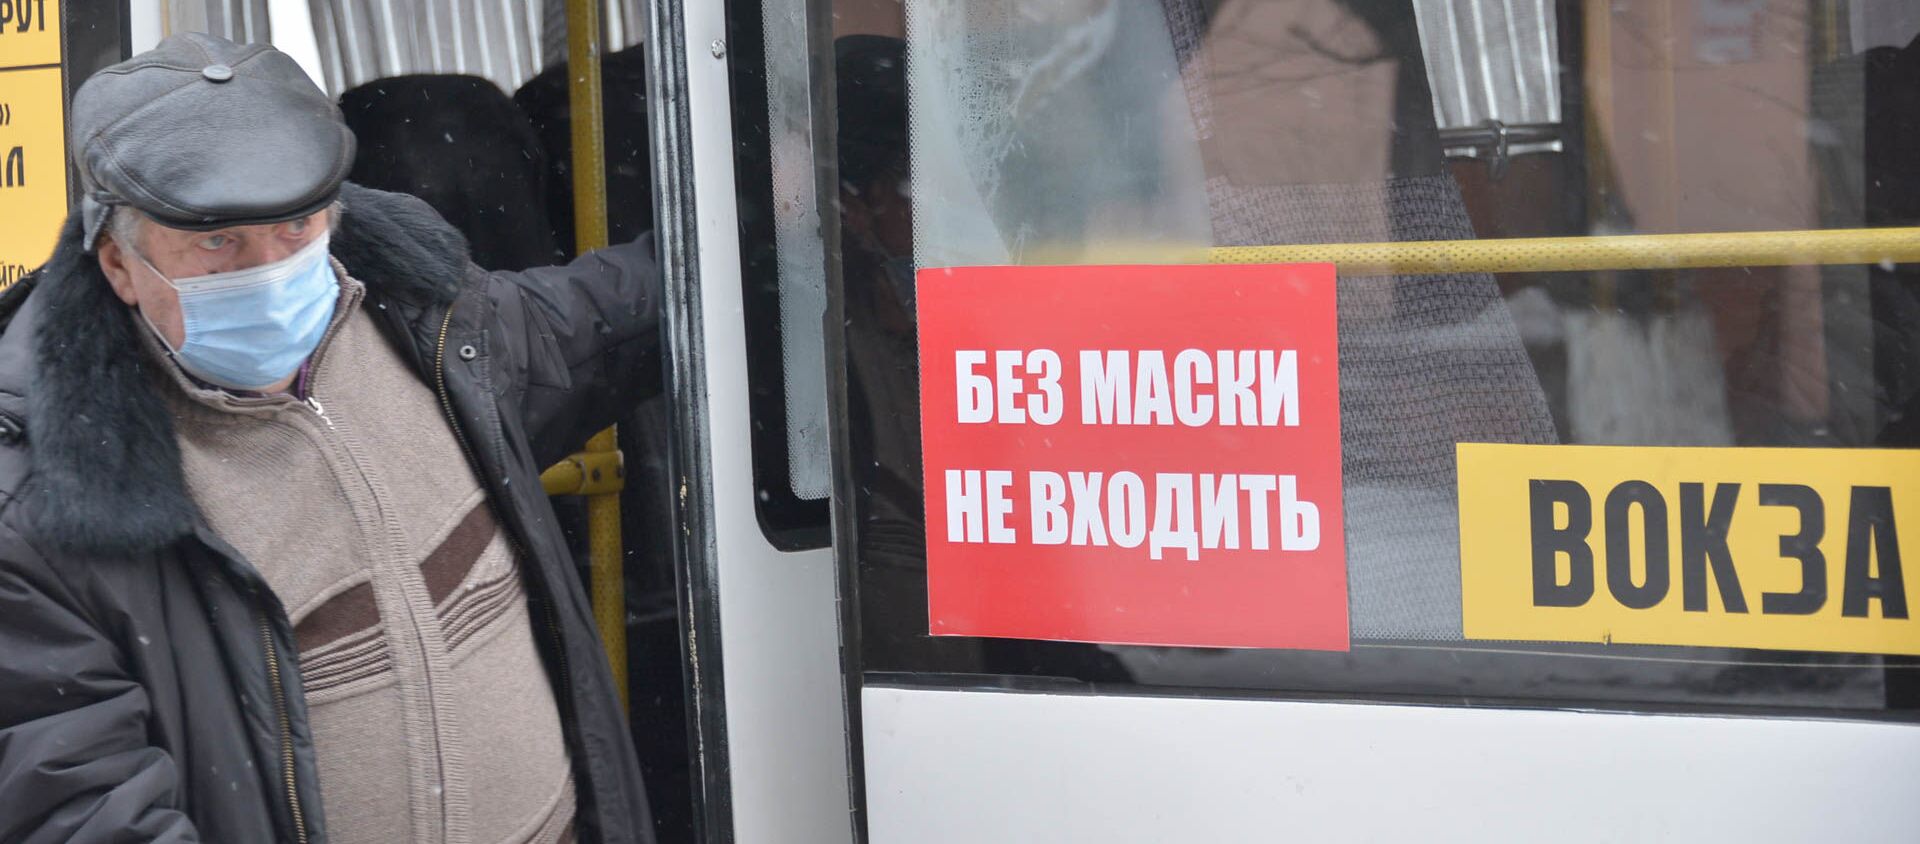 Пассажир в маске выходит из автобуса - Sputnik Казахстан, 1920, 01.04.2021